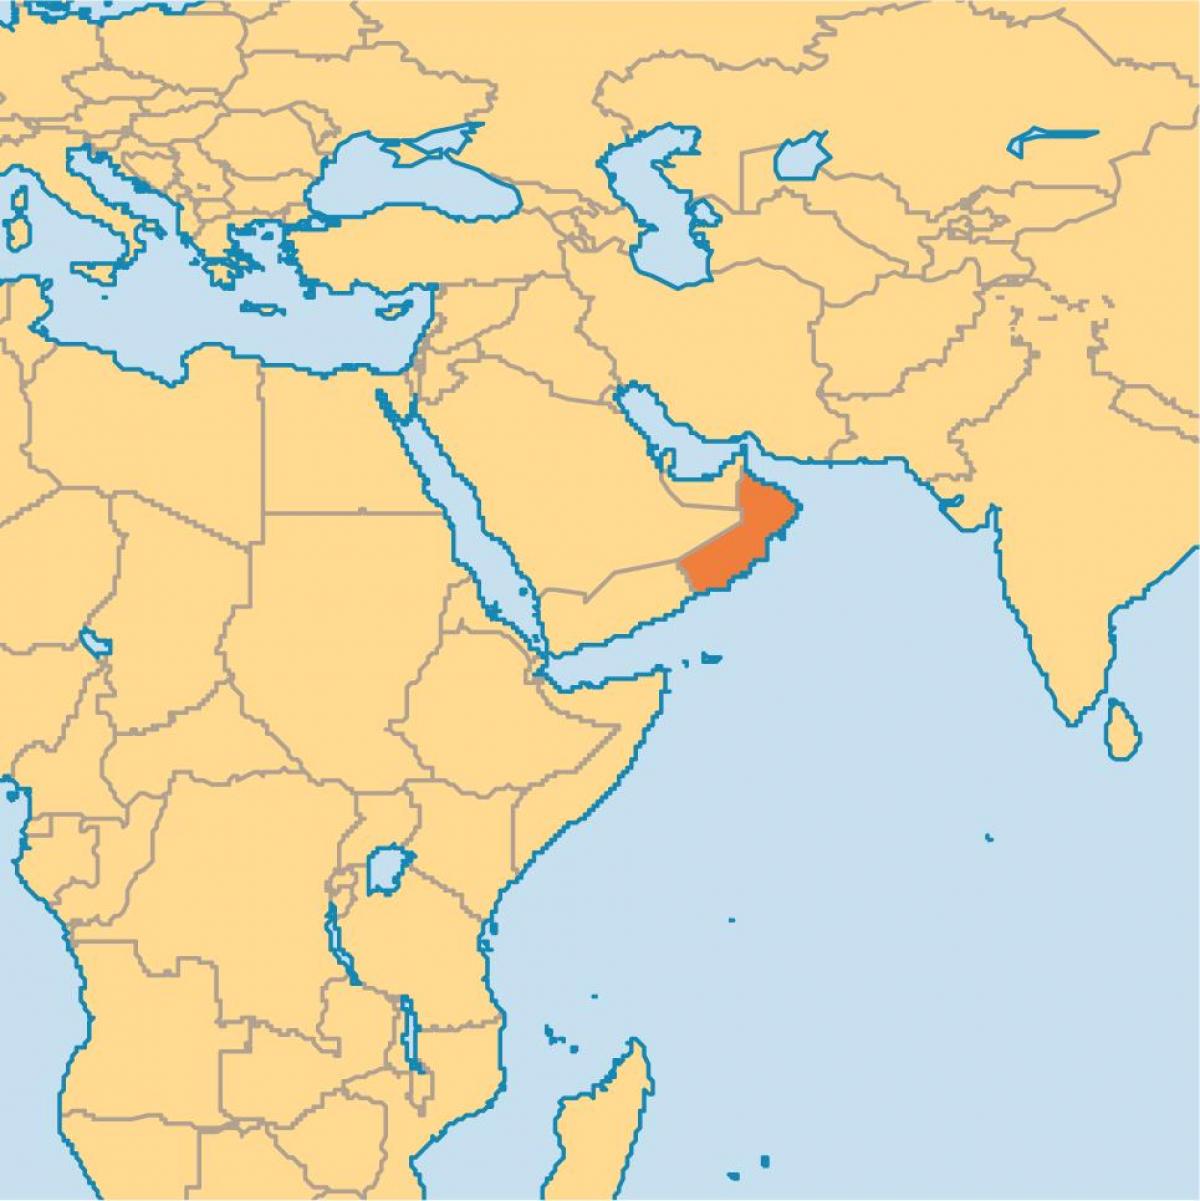 Oman kart dünyanın xəritəsi